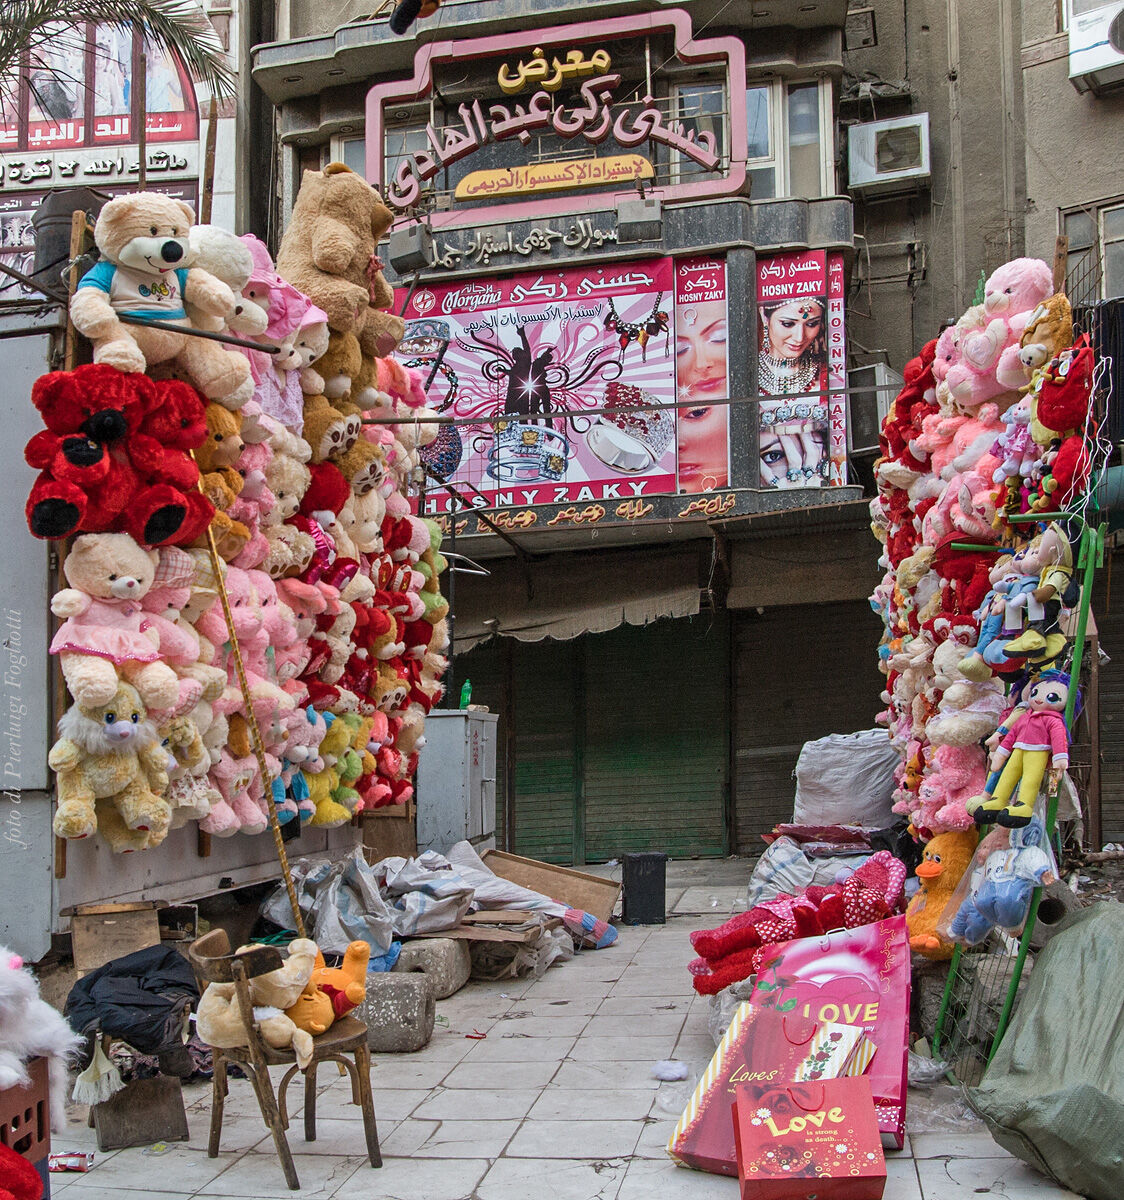 al mercato del Cairo - pupazzetti love...